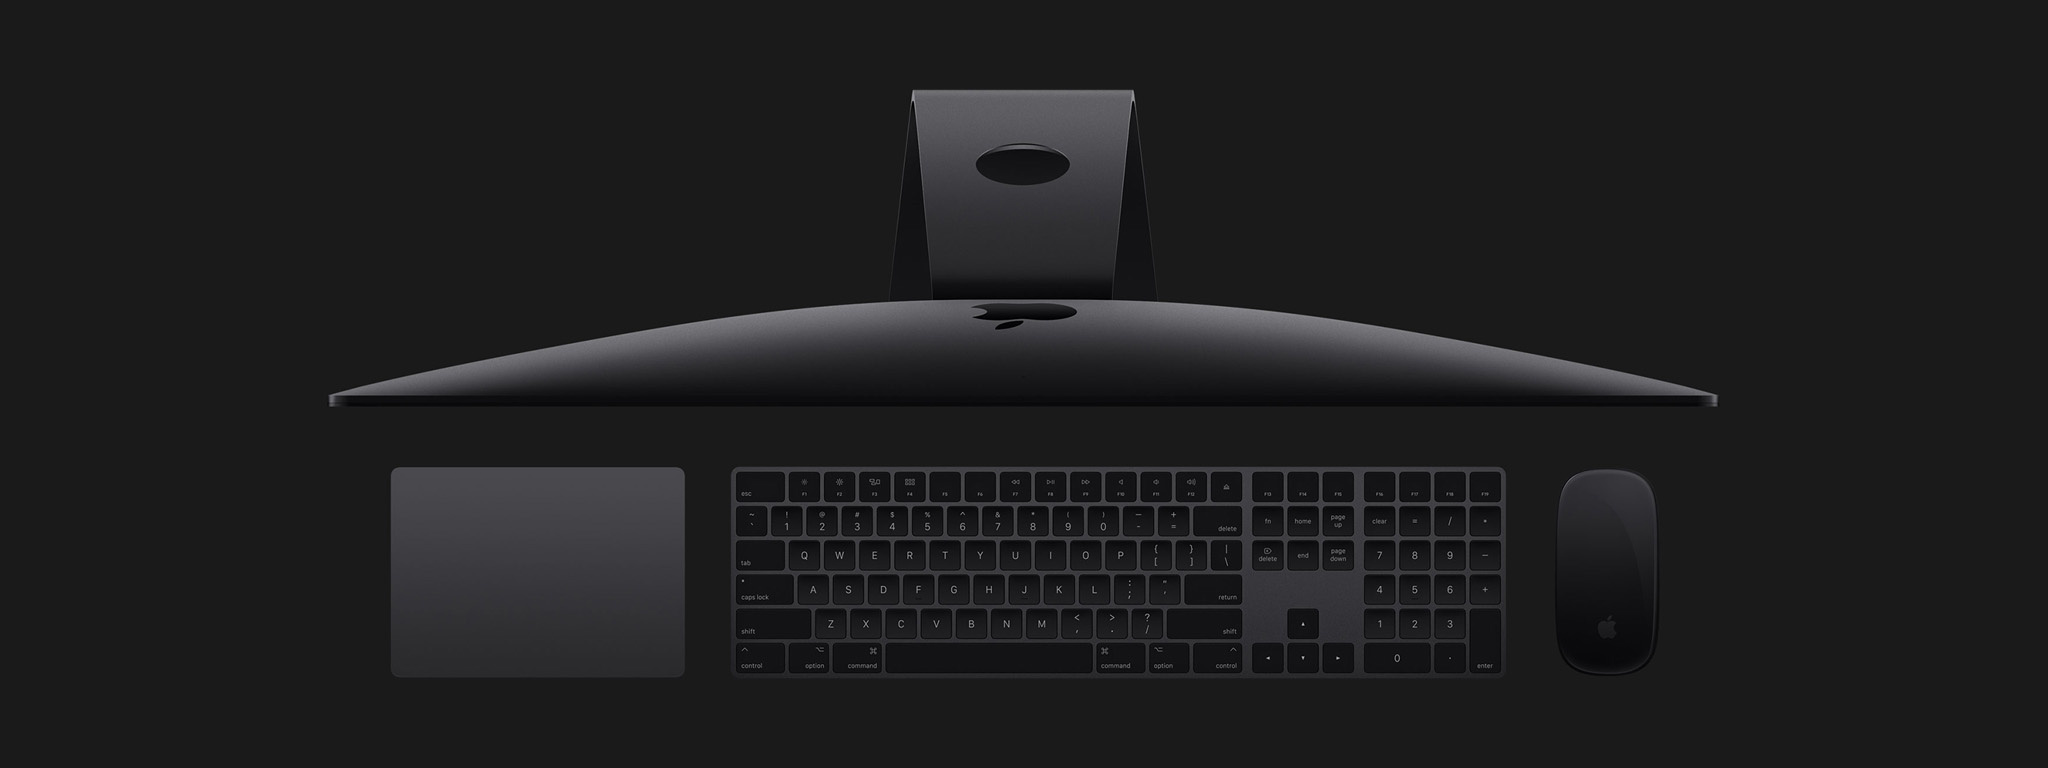 [WWDC17] iMac Pro: iMac hoàn toàn mới, iMac mạnh nhất, Xeon 18 nhân, màn 5K, card 16 GB, $5.000+